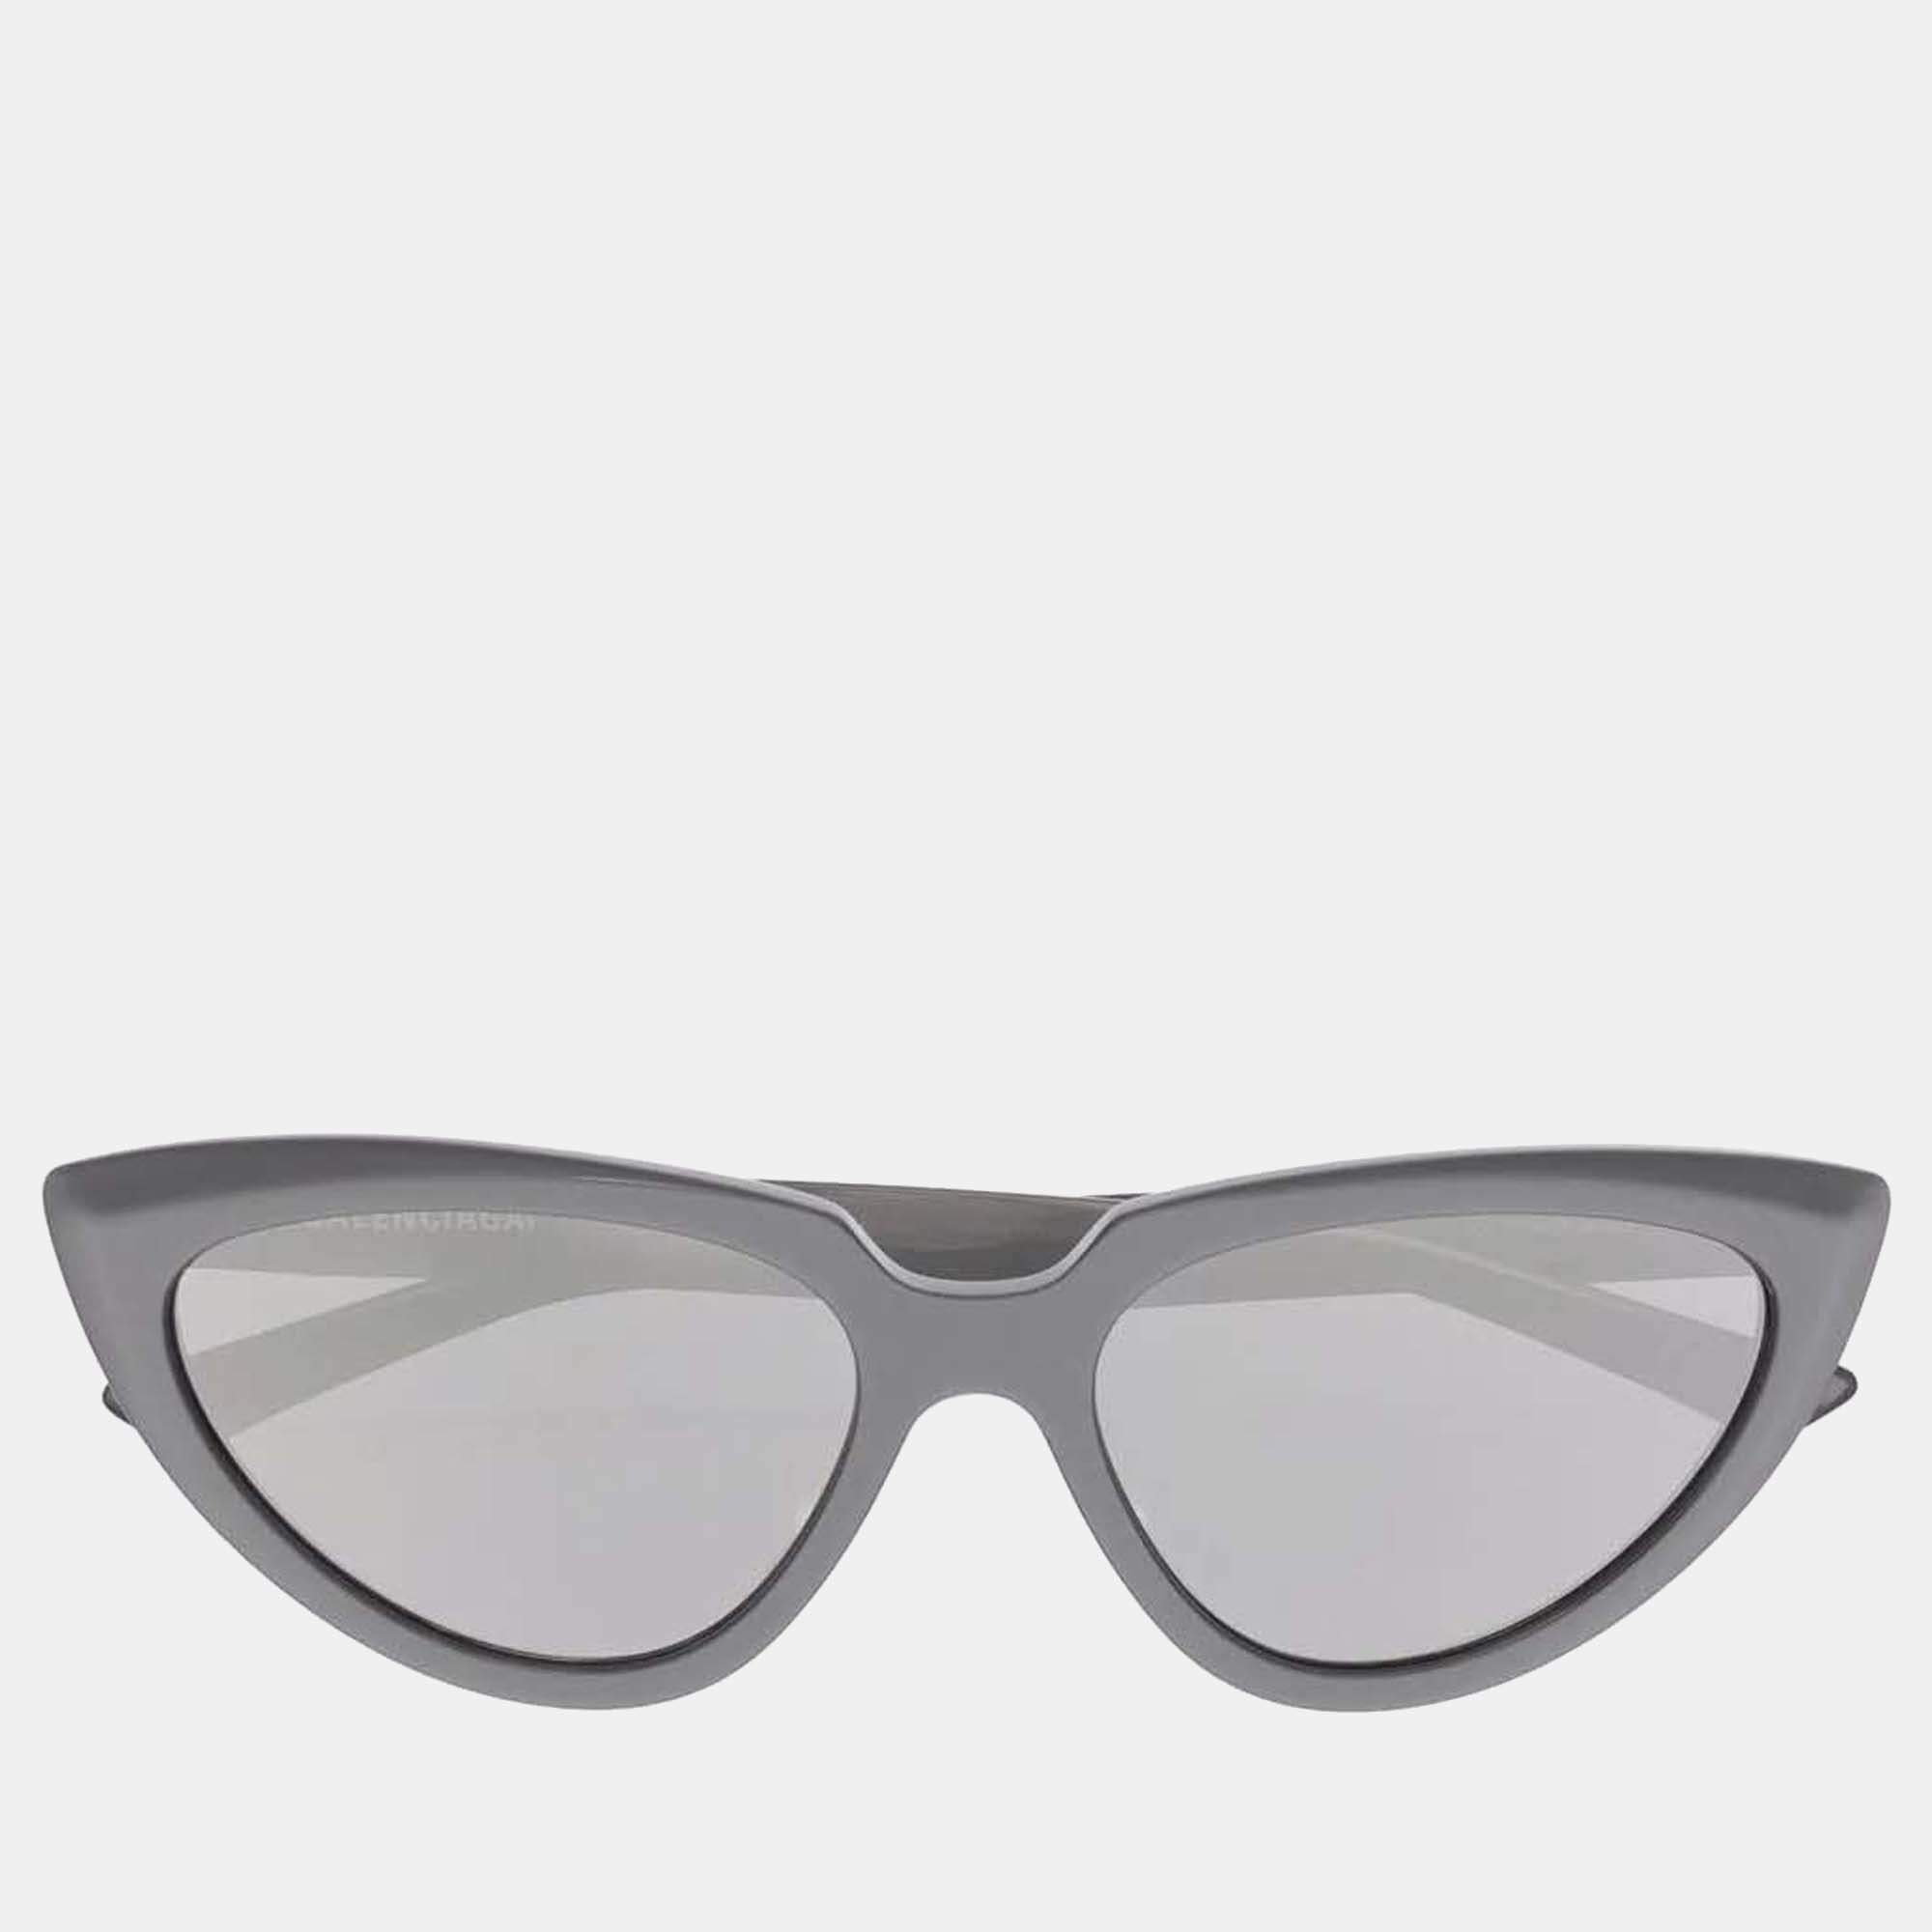 Buy Mi Wayfarer Sunglasses Grey For Men & Women Online @ Best Prices in  India | Flipkart.com